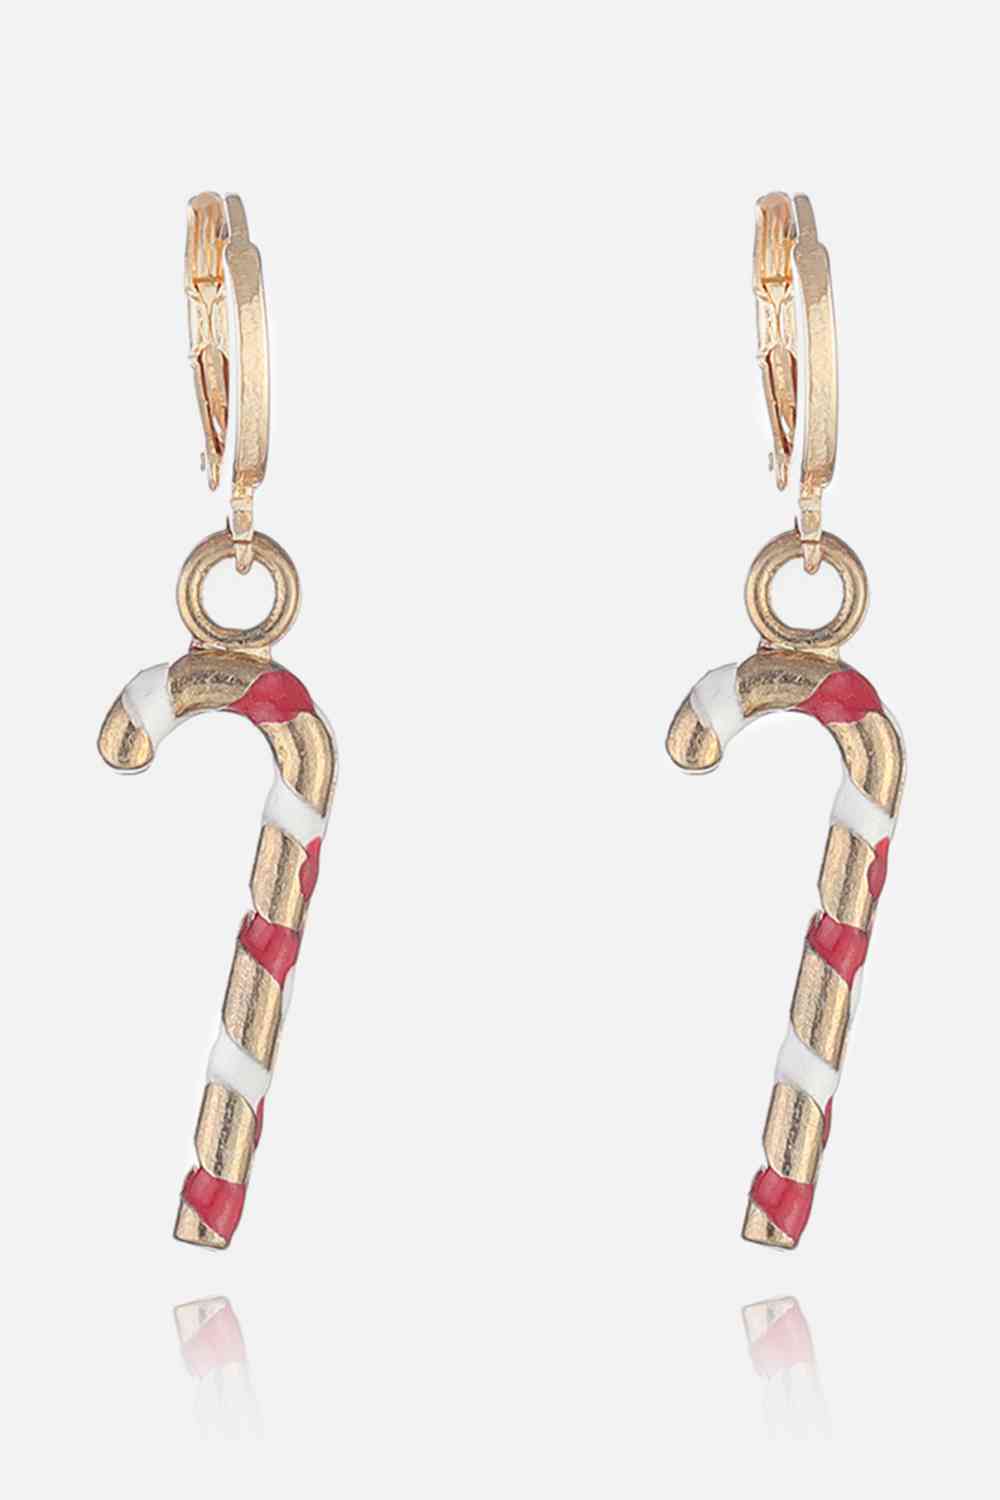 Christmas Theme Alloy Earrings - Style K / One Size - Women’s Jewelry - Earrings - 24 - 2024